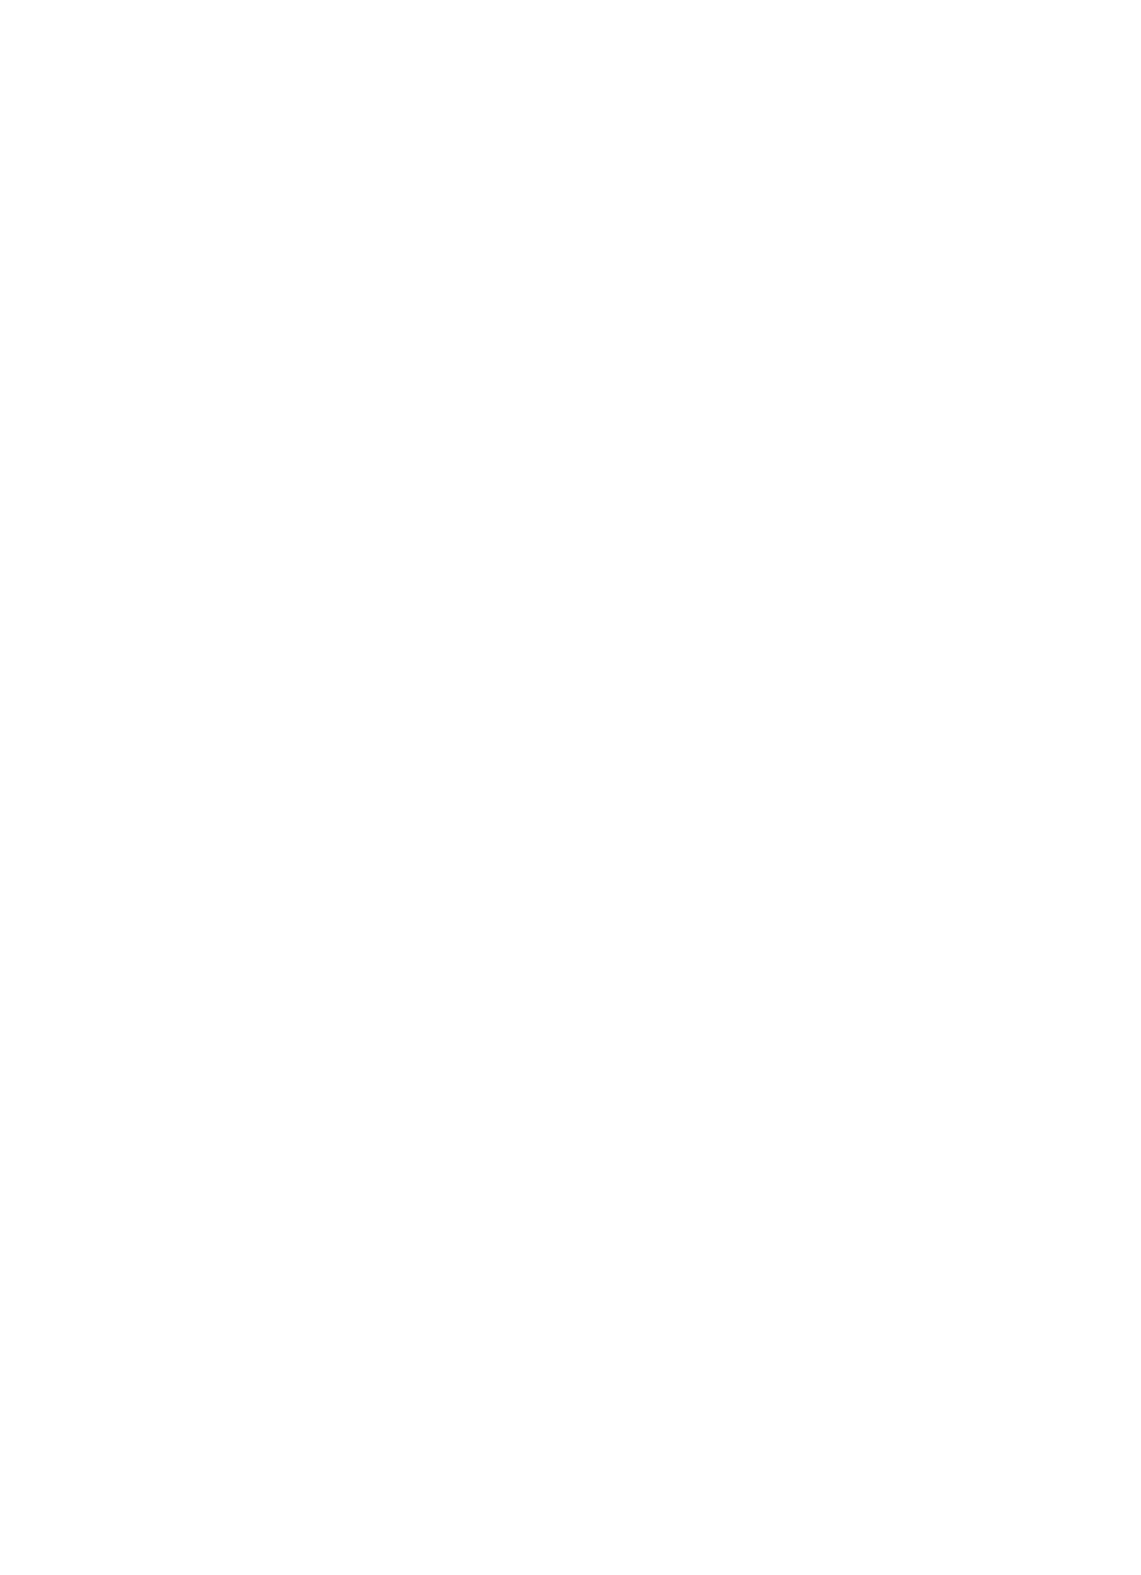 Telkom SA logo for dark backgrounds (transparent PNG)